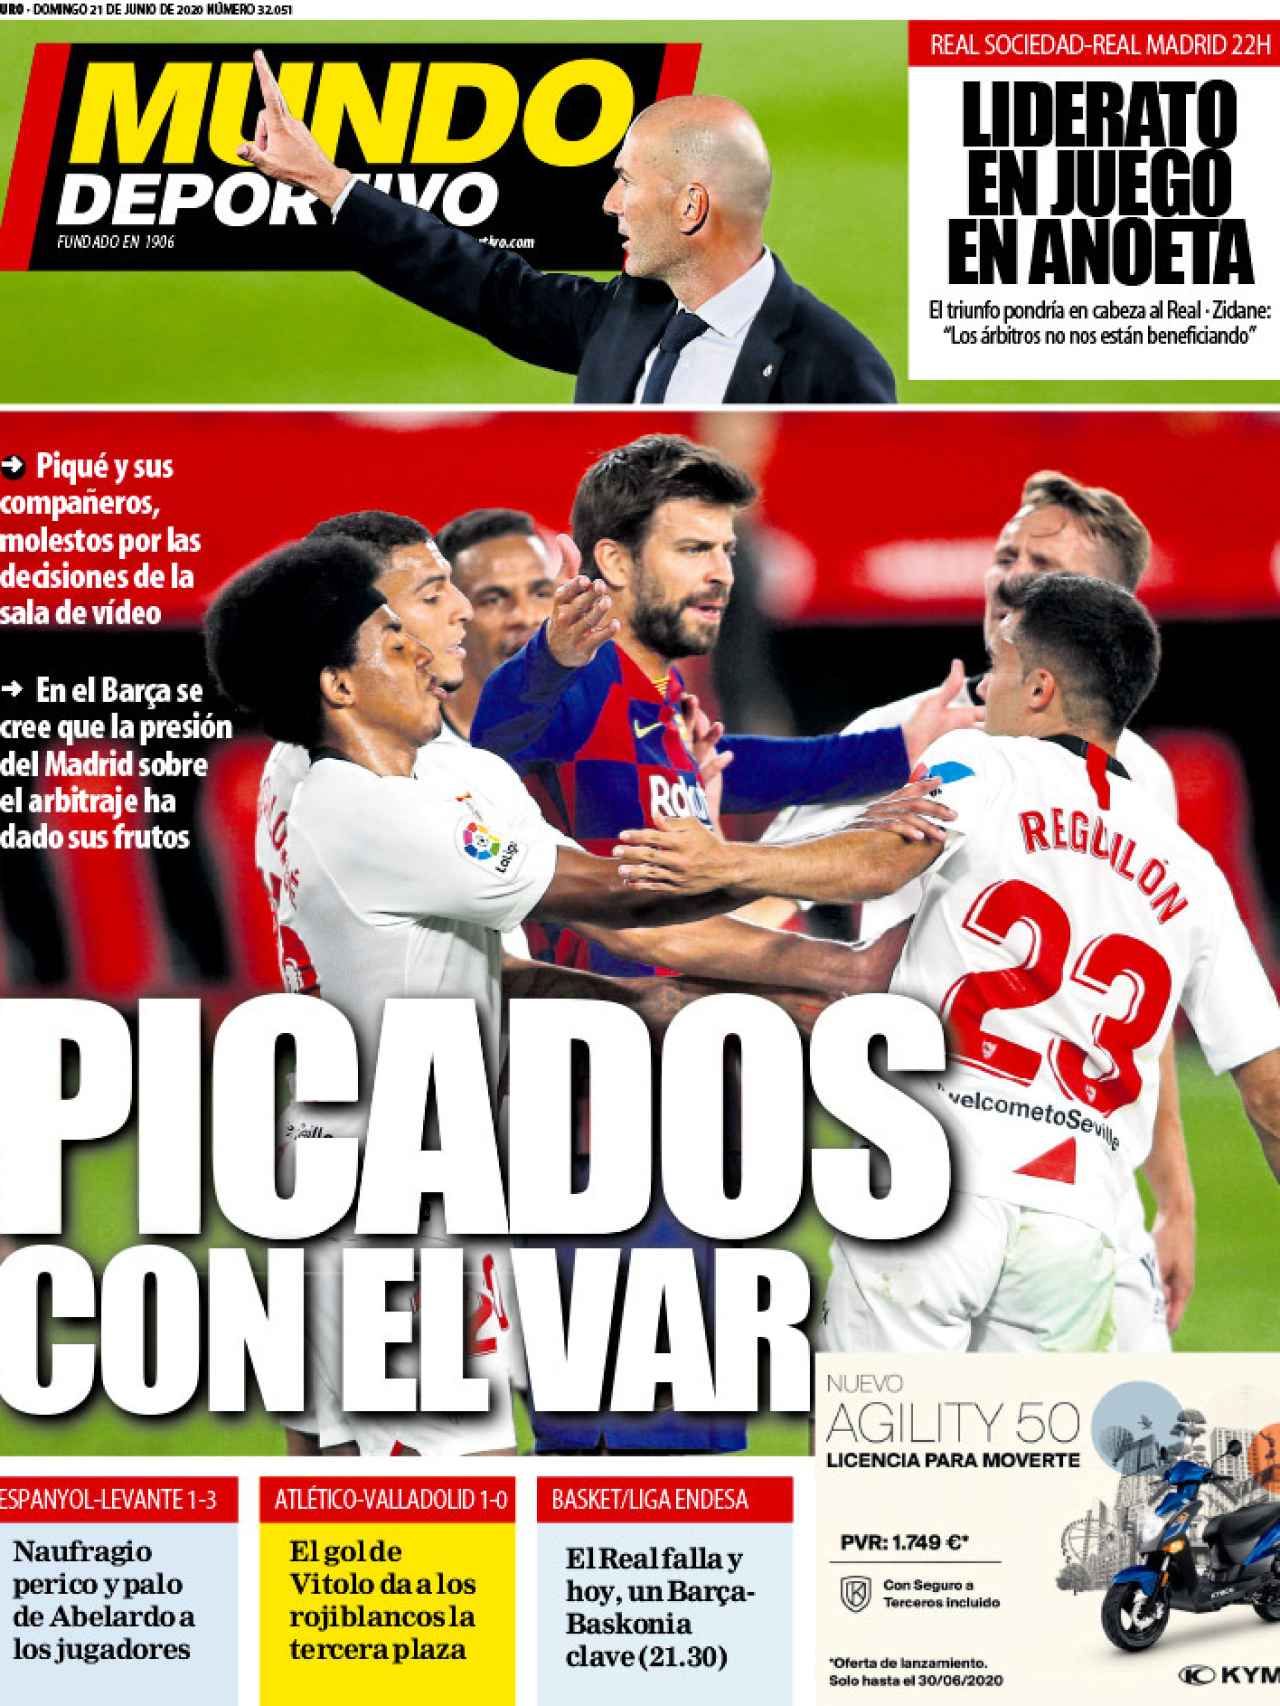 La portada del diario Mundo Deportivo (21/06/2020)